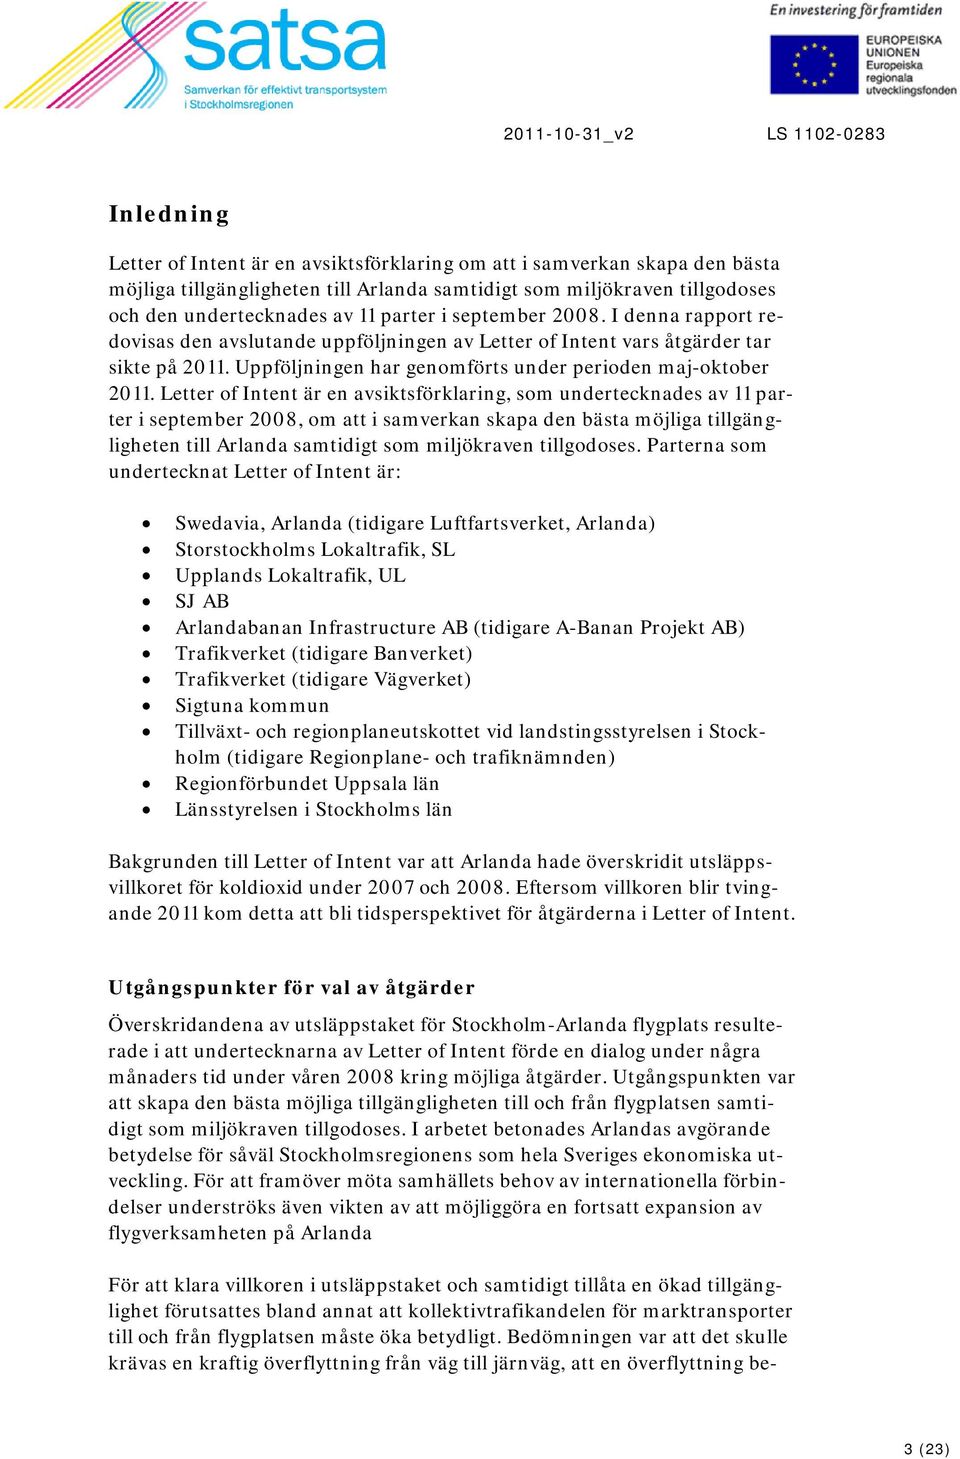 Letter of Intent är en avsiktsförklaring, som undertecknades av 11 parter i september 2008, om att i samverkan skapa den bästa möjliga tillgängligheten till Arlanda samtidigt som miljökraven